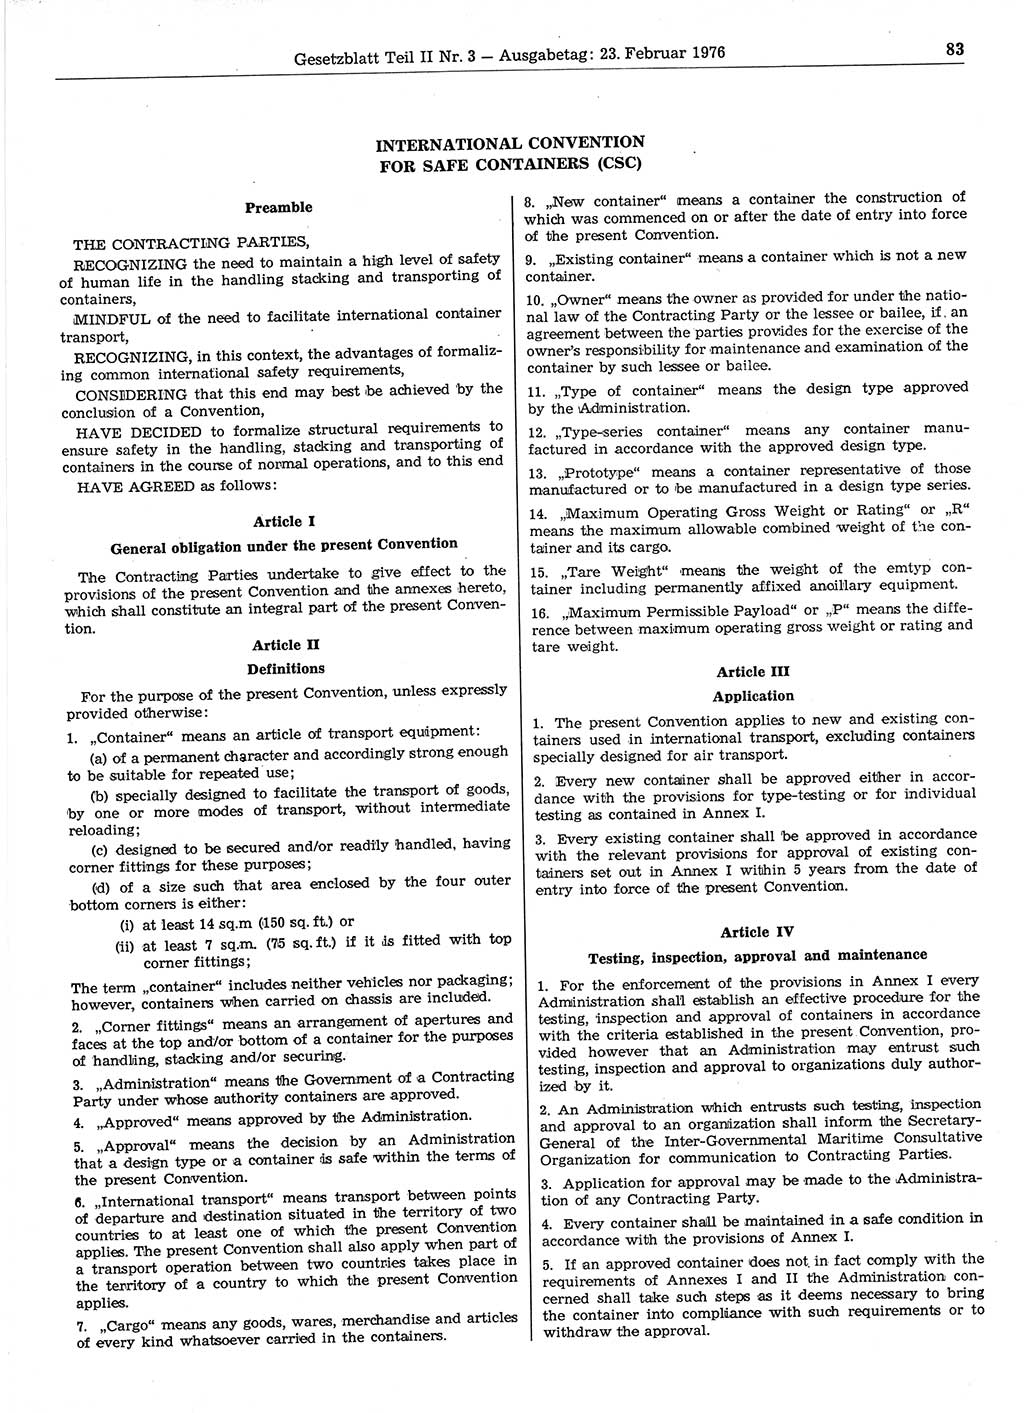 Gesetzblatt (GBl.) der Deutschen Demokratischen Republik (DDR) Teil ⅠⅠ 1976, Seite 83 (GBl. DDR ⅠⅠ 1976, S. 83)